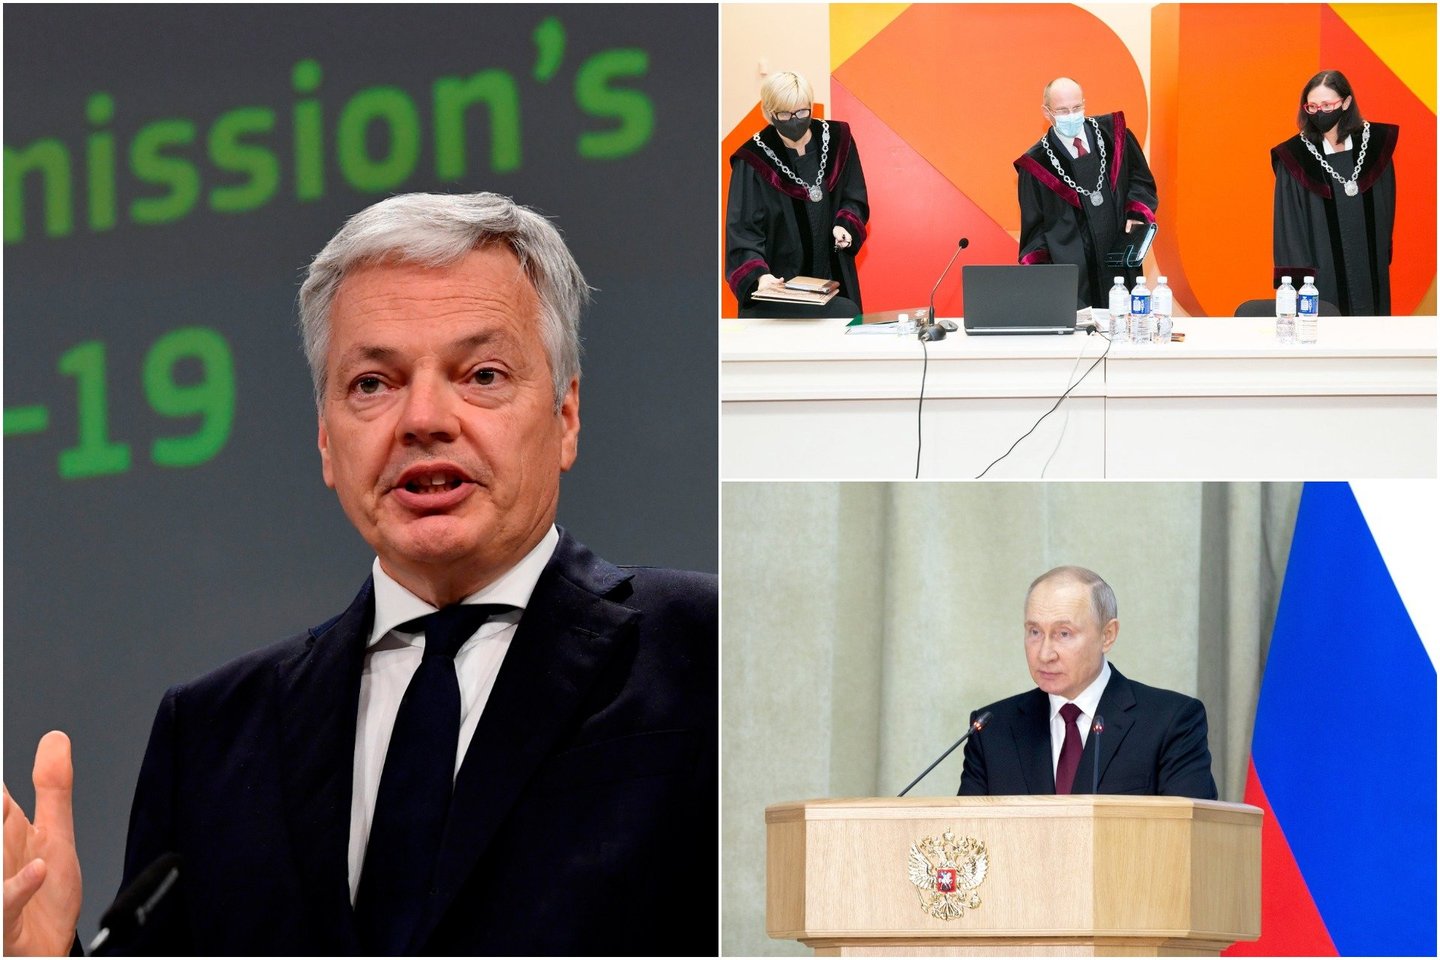  Teisingumo eurokomisaras D.Reyndersas sako, kad Europos Sąjunga gins Sausio 13-osios bylą nagrinėjusius Lietuvos teisėjus nuo Rusijos persekiojimo. <br> lrytas.lt koliažas.